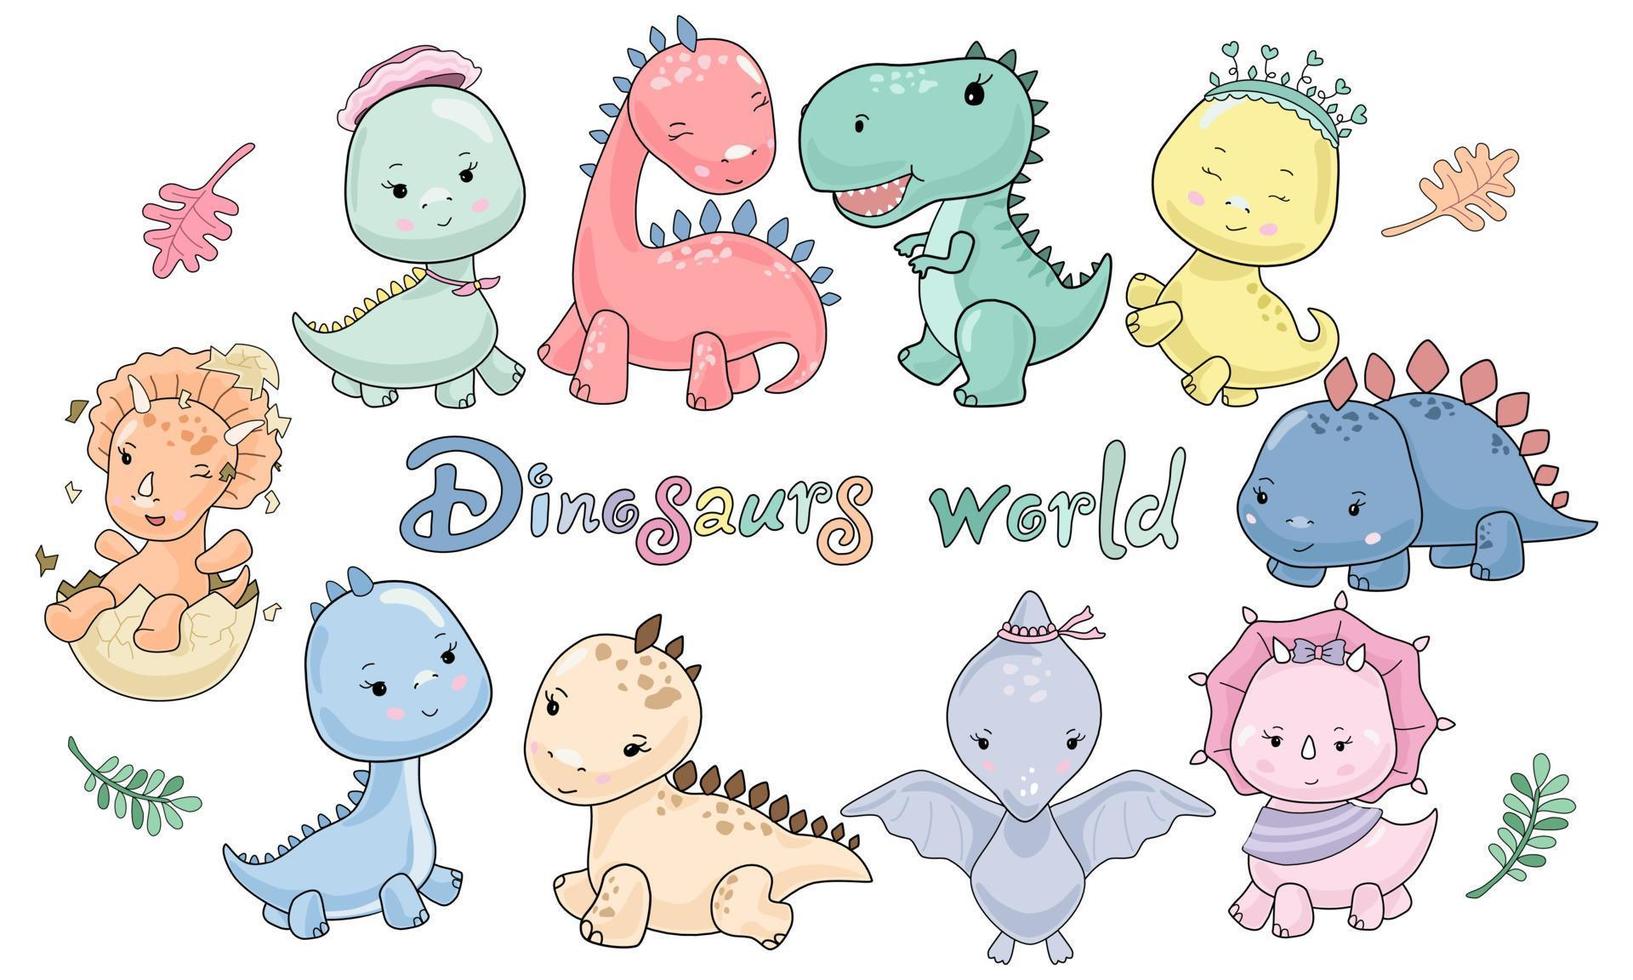 mondo di simpatici personaggi di dinosauri progettati in stile doodle pastello vettore